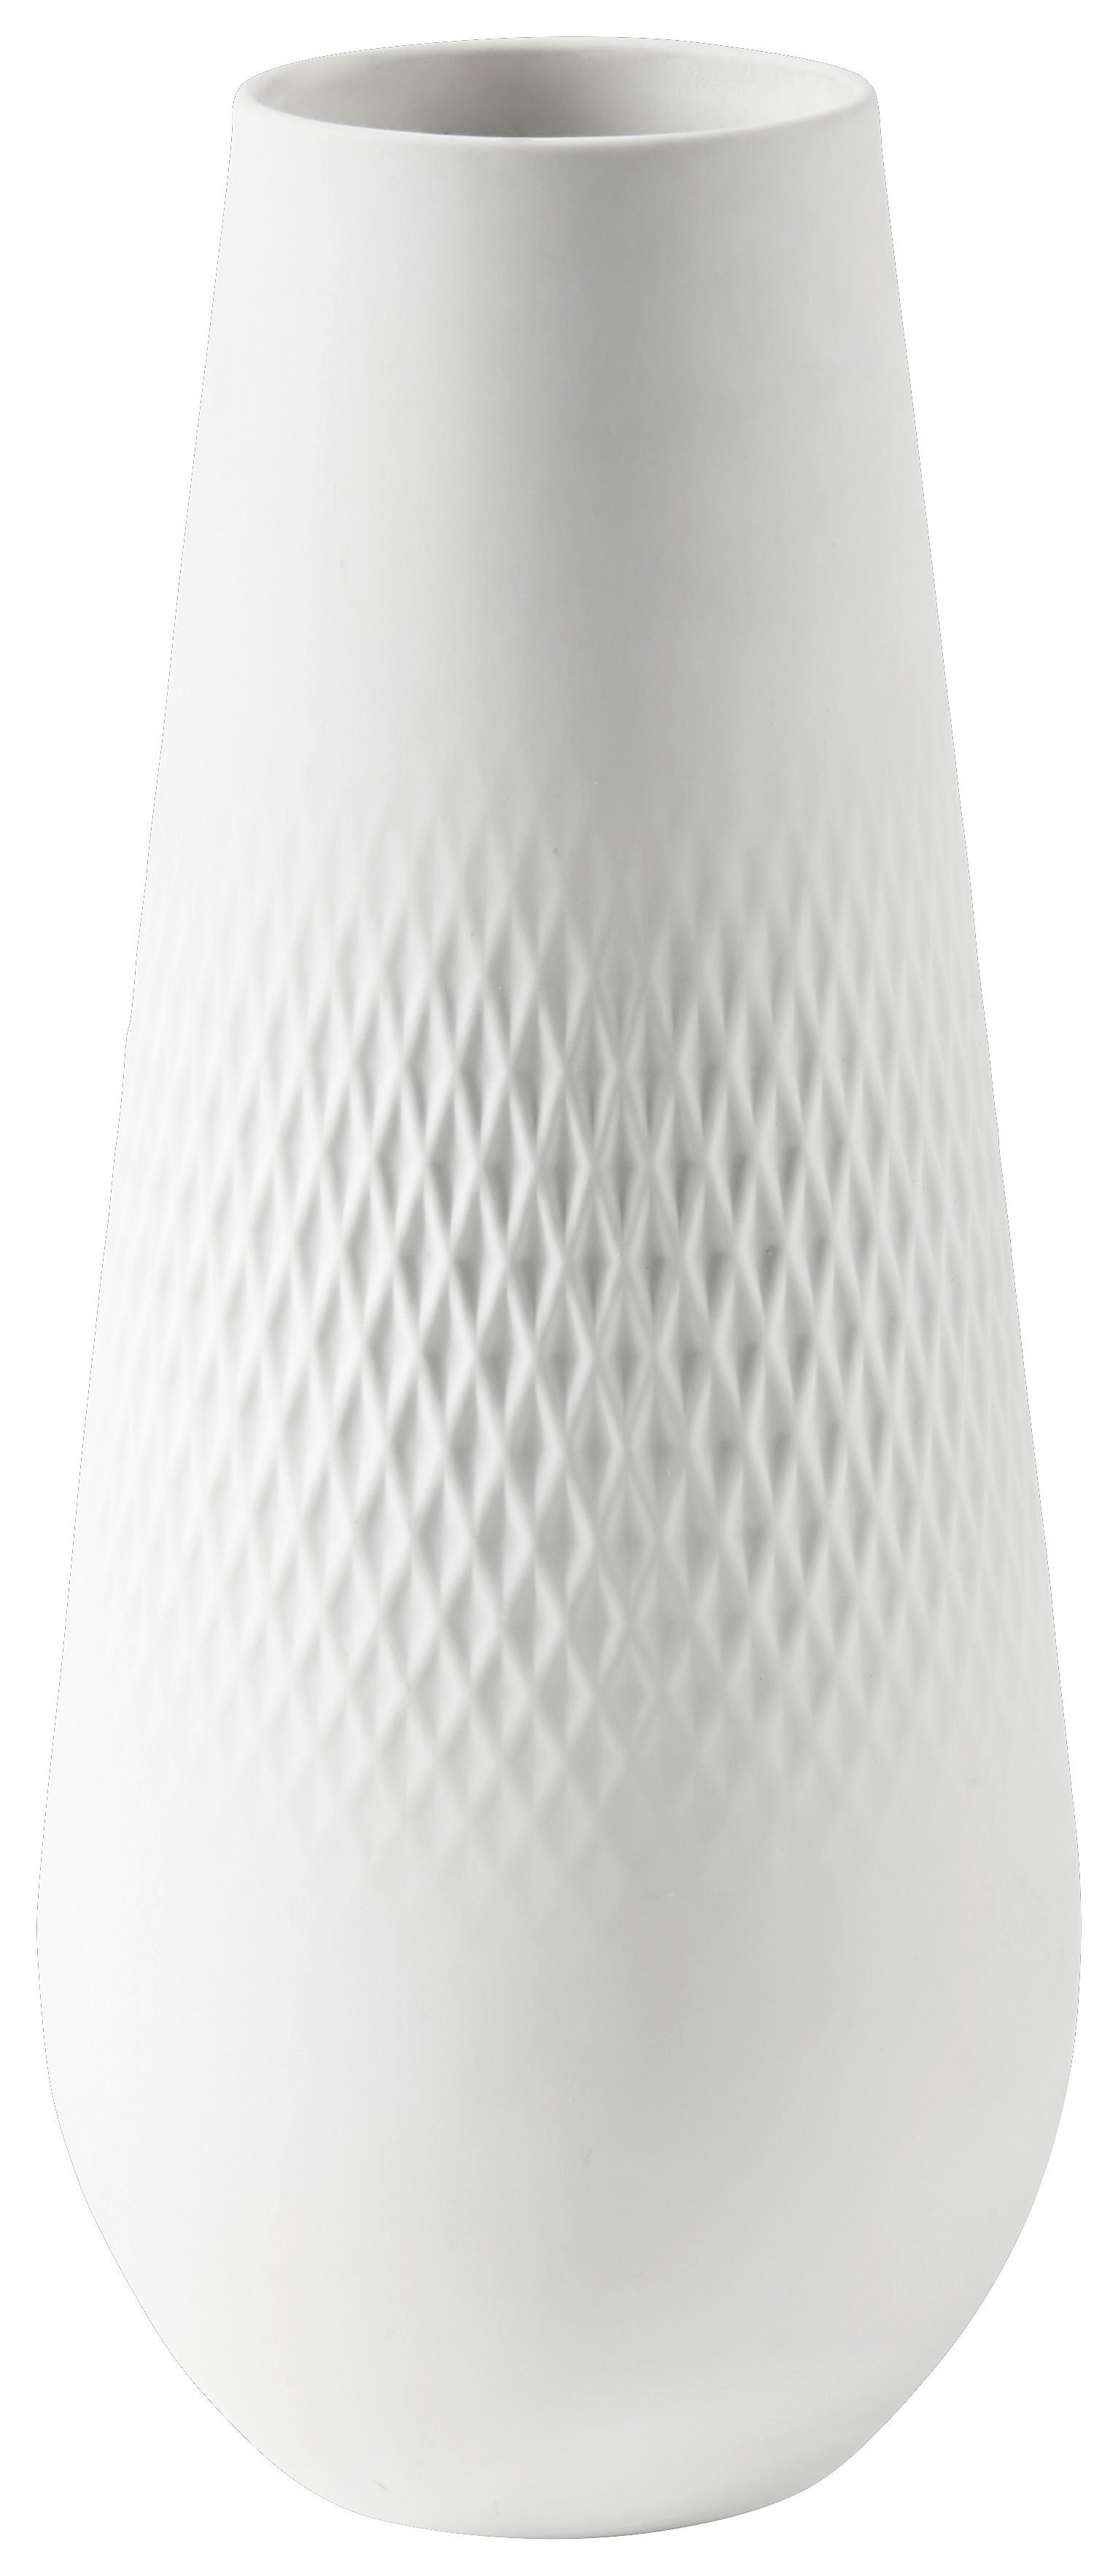 VÁZA, keramika, 26 cm - krémová, Design, keramika (11,5/11,5/26cm) - Villeroy & Boch